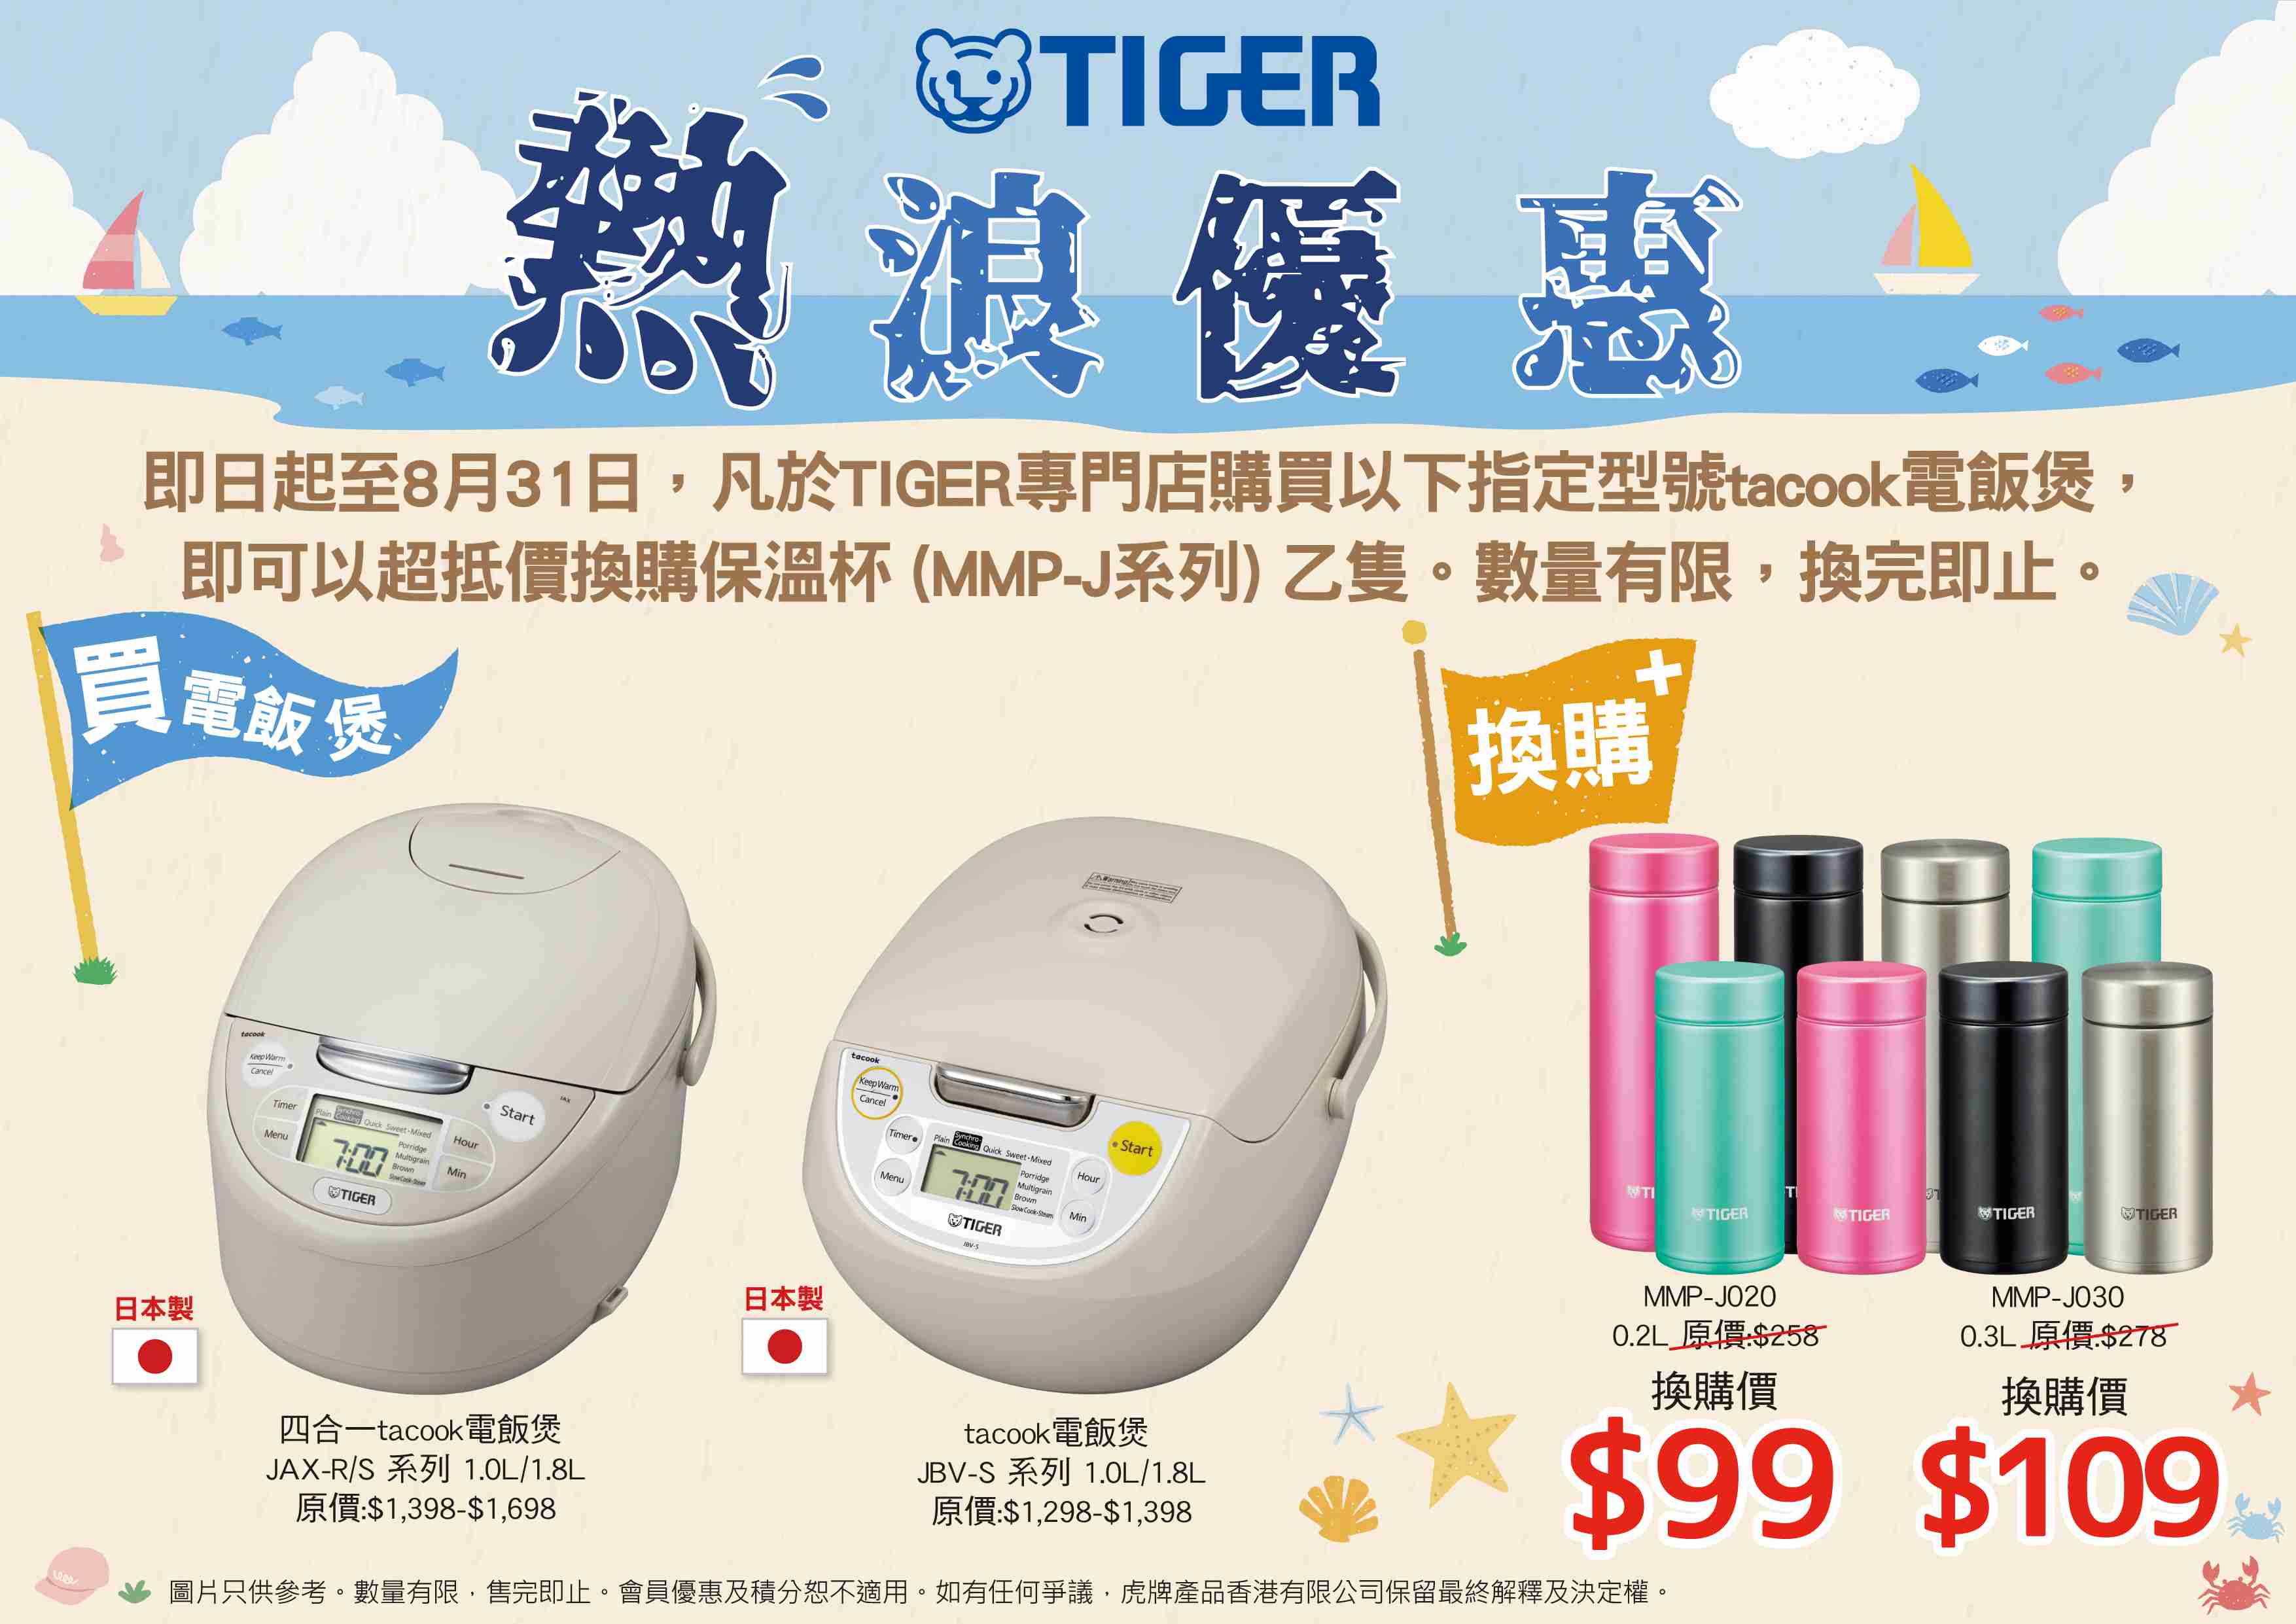 tiger-tiger-shop-summer-sale-1.jpg (316 KB)